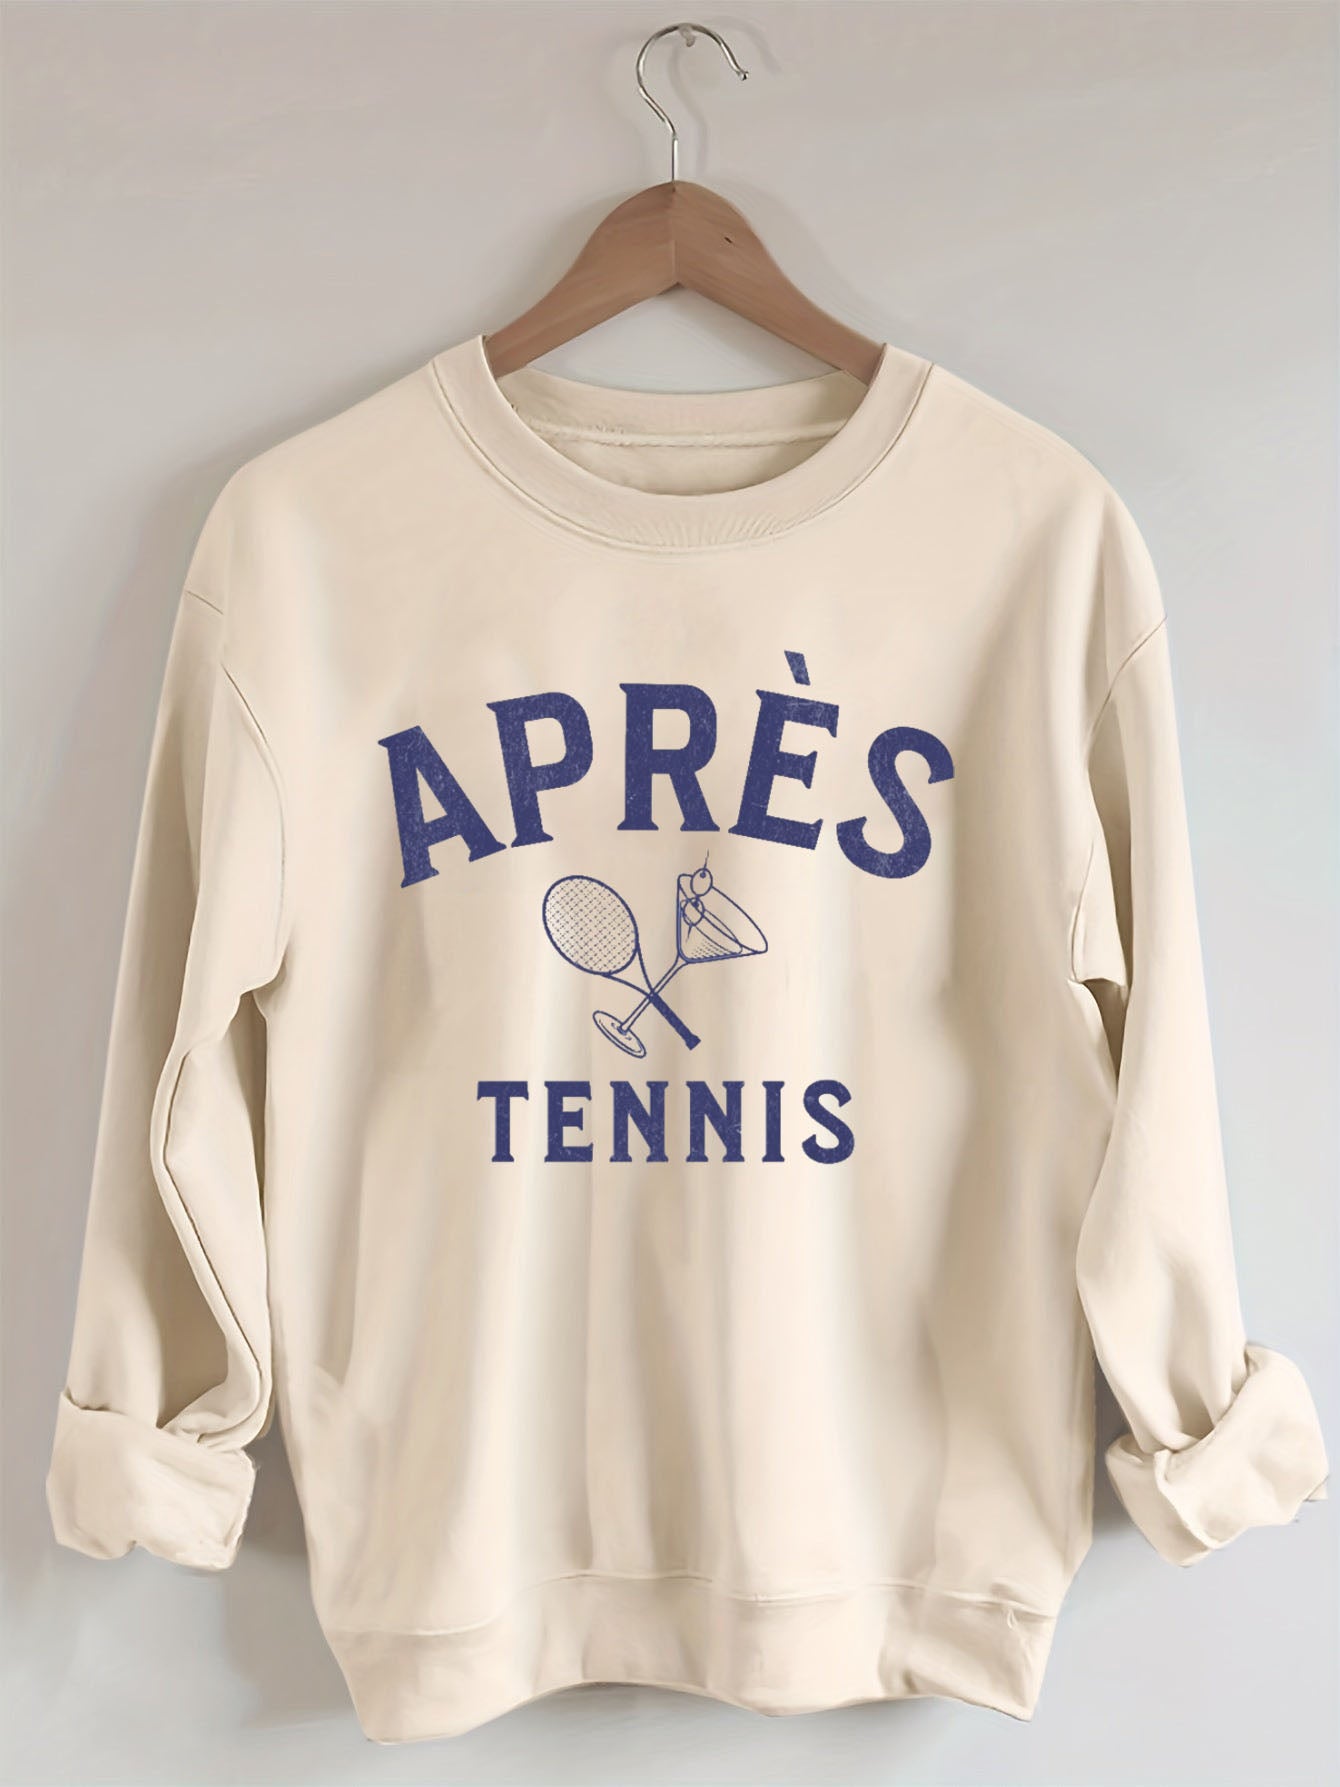 Apres Tennis Sweatshirt